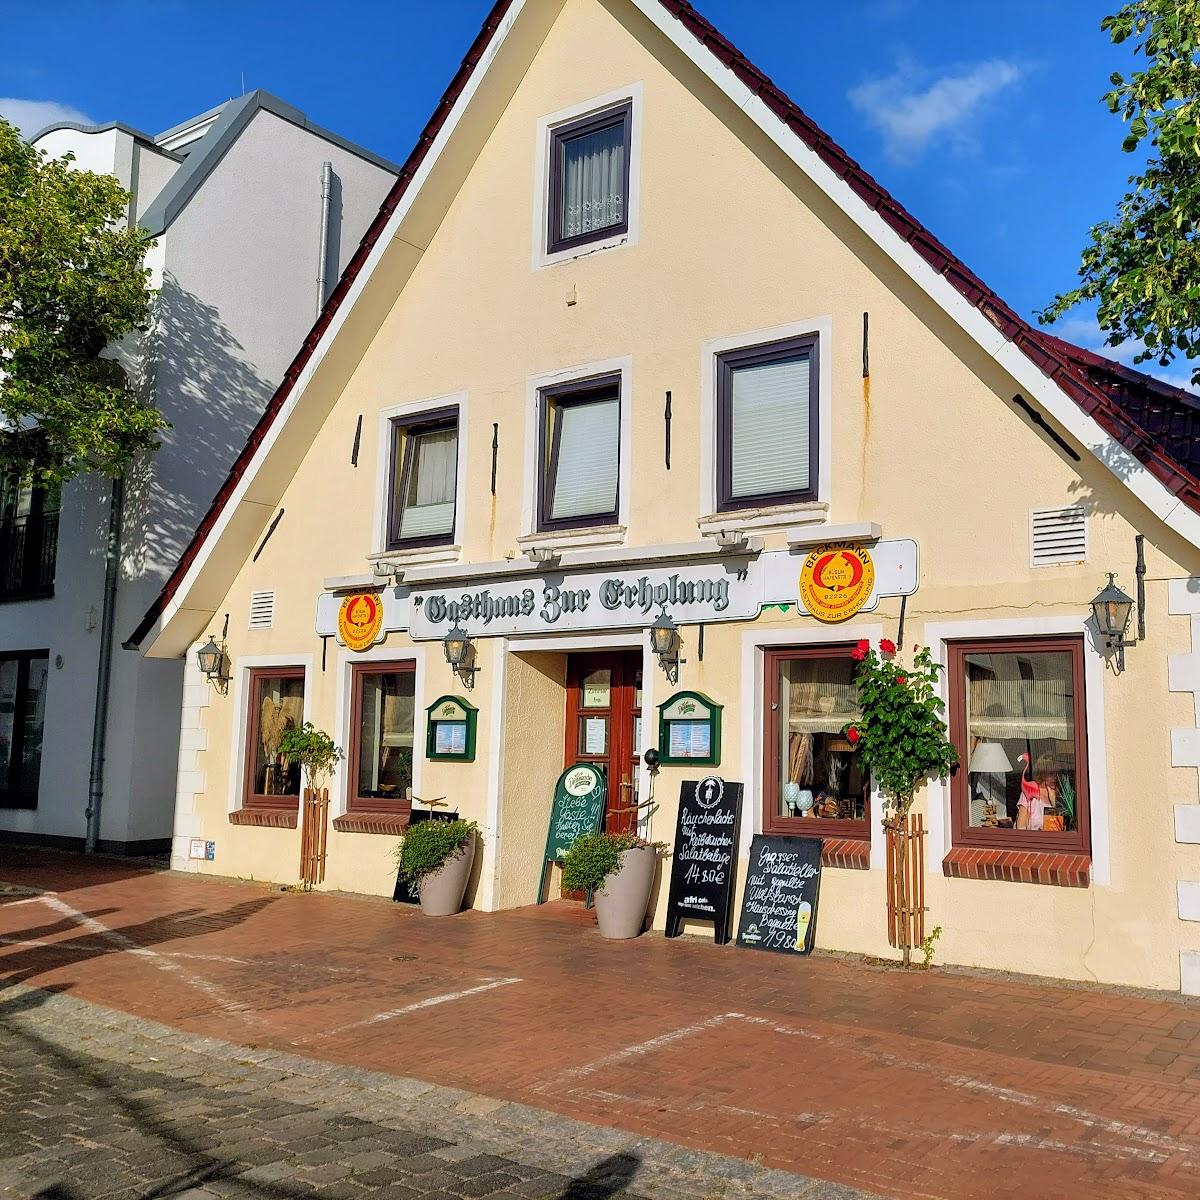 Restaurant "Restaurant zur Erholung" in  Büsum